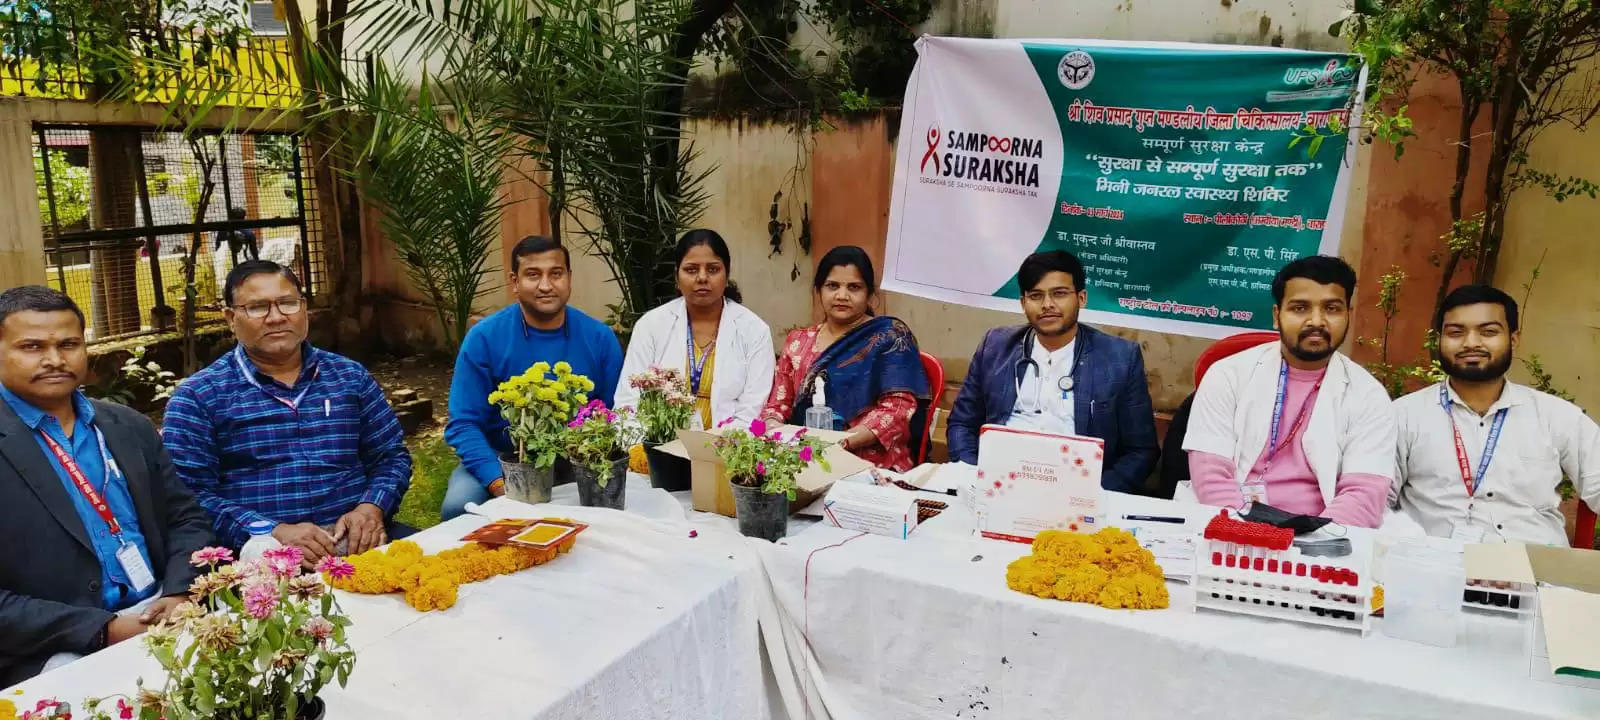 Varanasi News: शिव प्रसाद गुप्त मण्डलीम जिला चिकित्सालय के SSK विभाग द्वारा पीलीकोठी, अम्बियामण्डी में मिनी शिविर का आयोजन किया गया